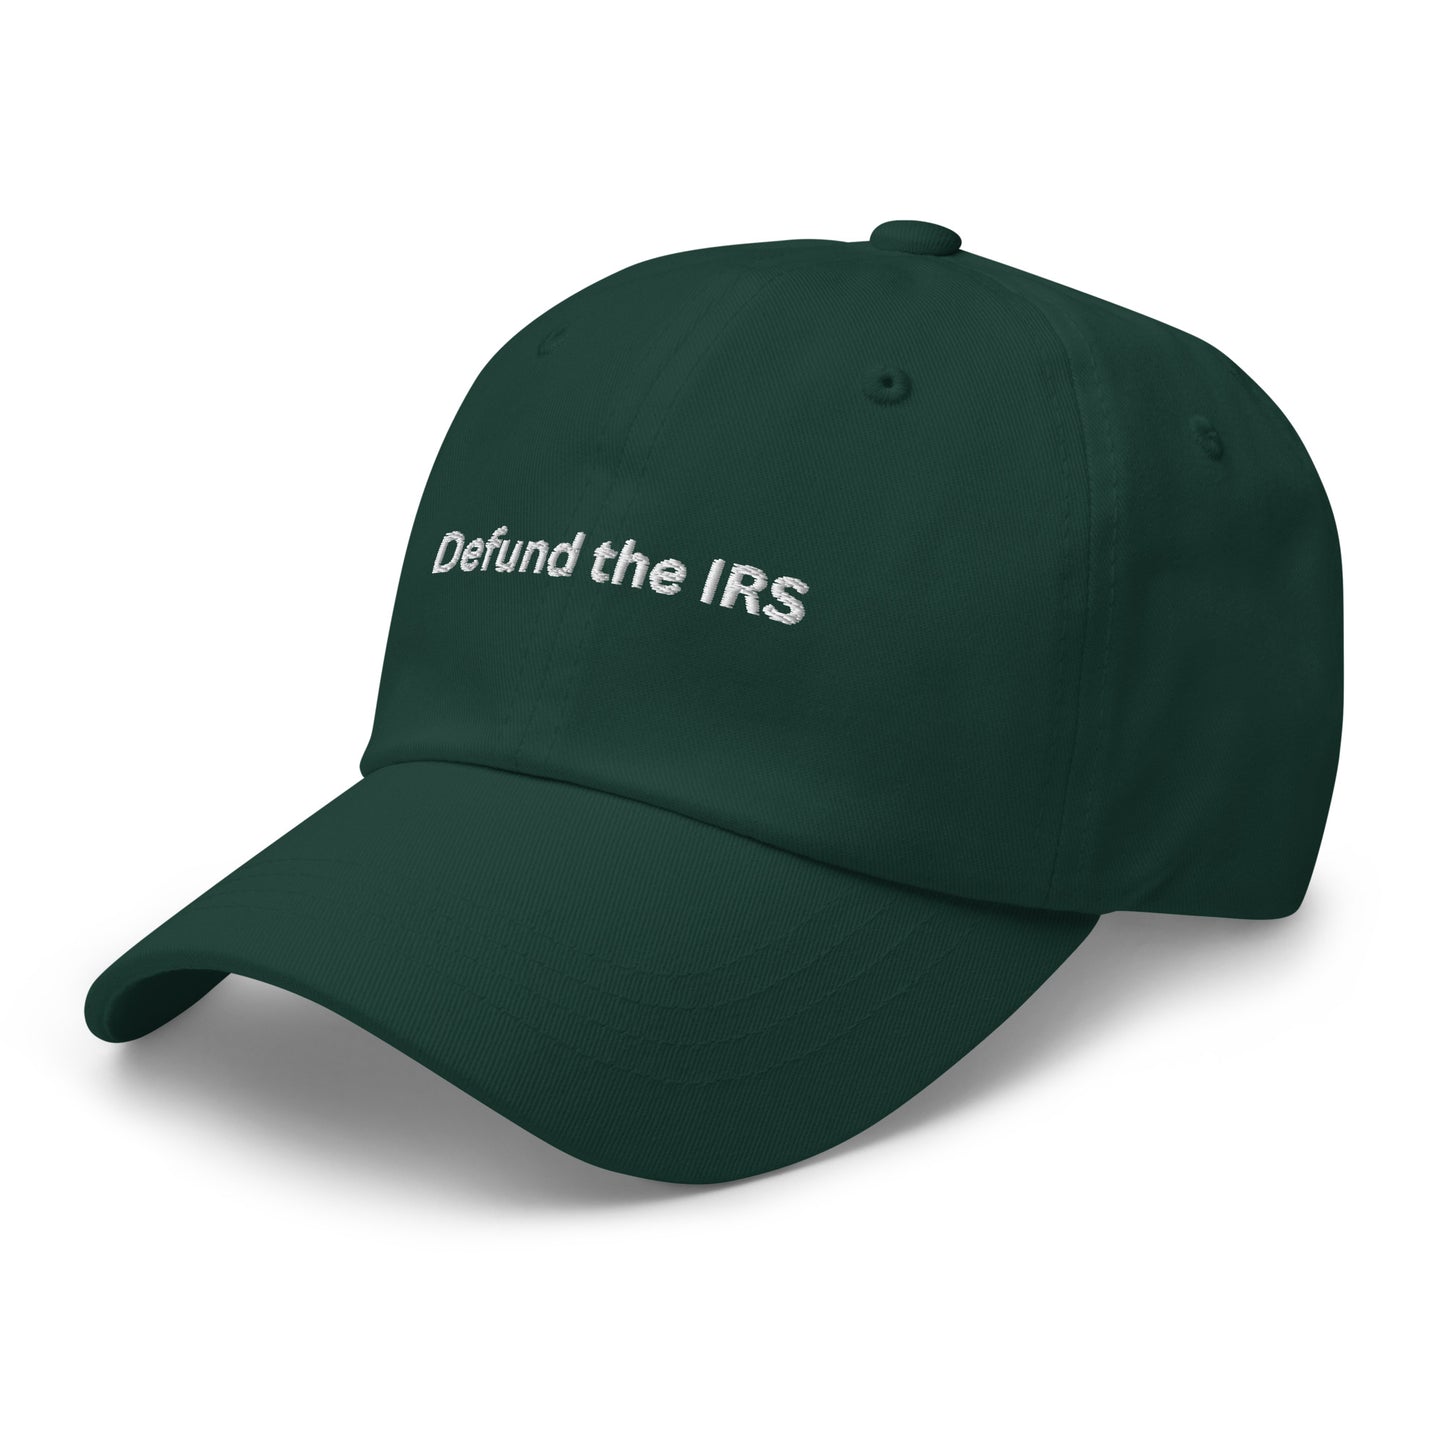 Defund the IRS Cap